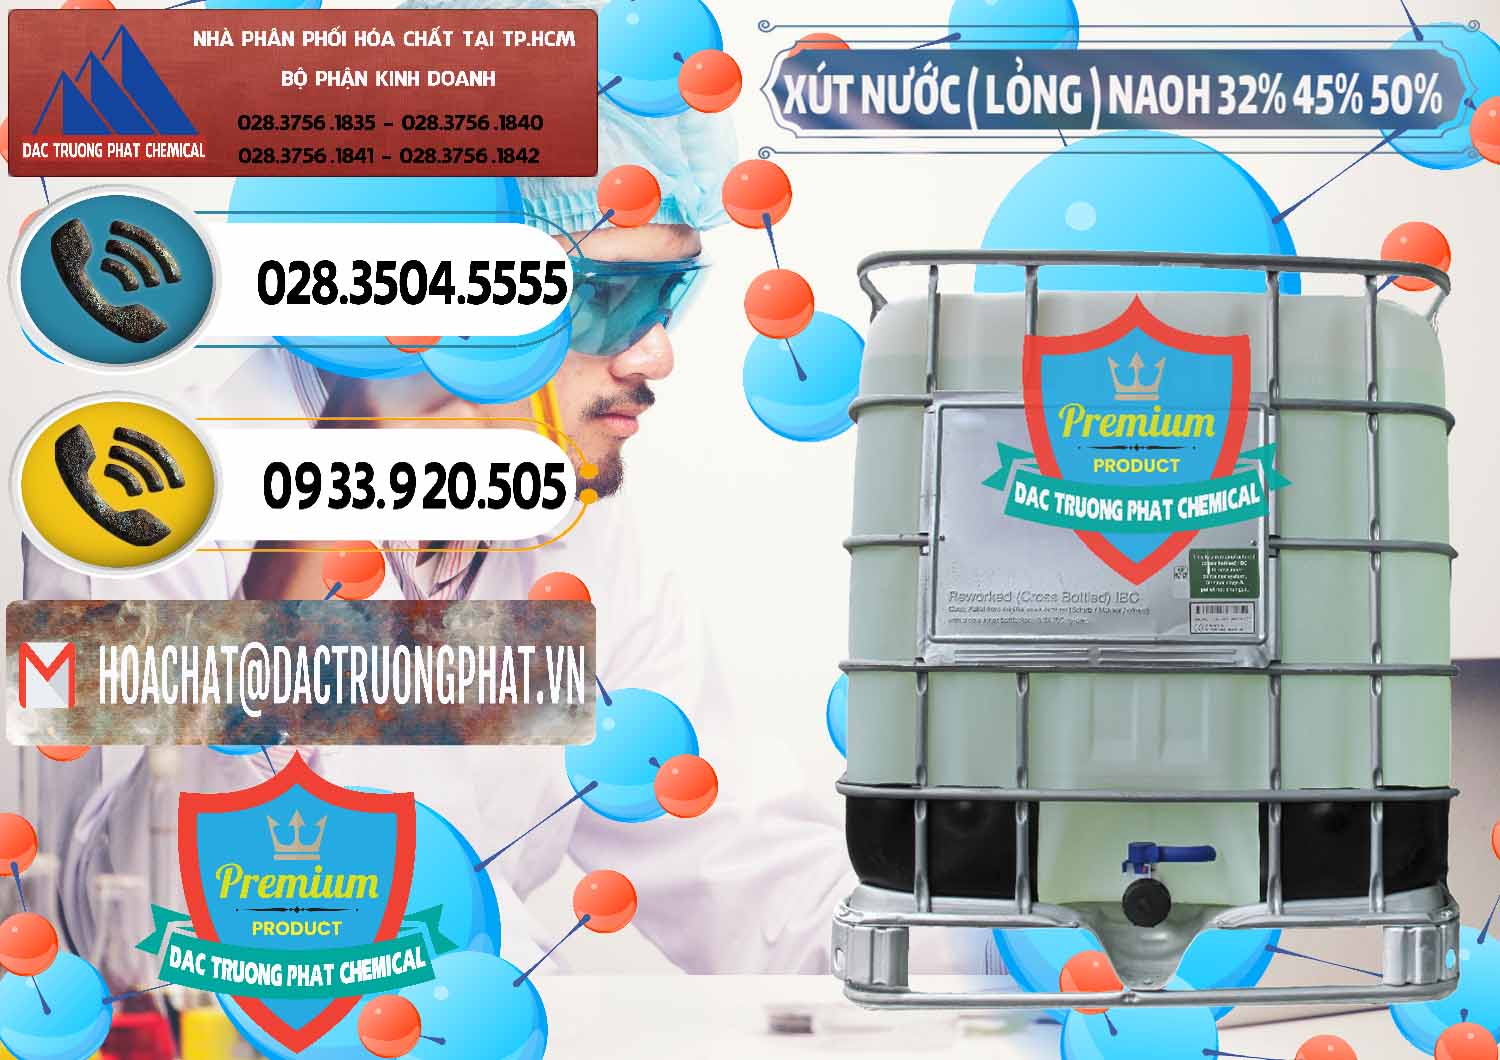 Đơn vị chuyên cung cấp và kinh doanh Xút Lỏng – NaOH Lỏng 32% 45% 50% Việt Nam - 0195 - Cung cấp - kinh doanh hóa chất tại TP.HCM - hoachatdetnhuom.vn